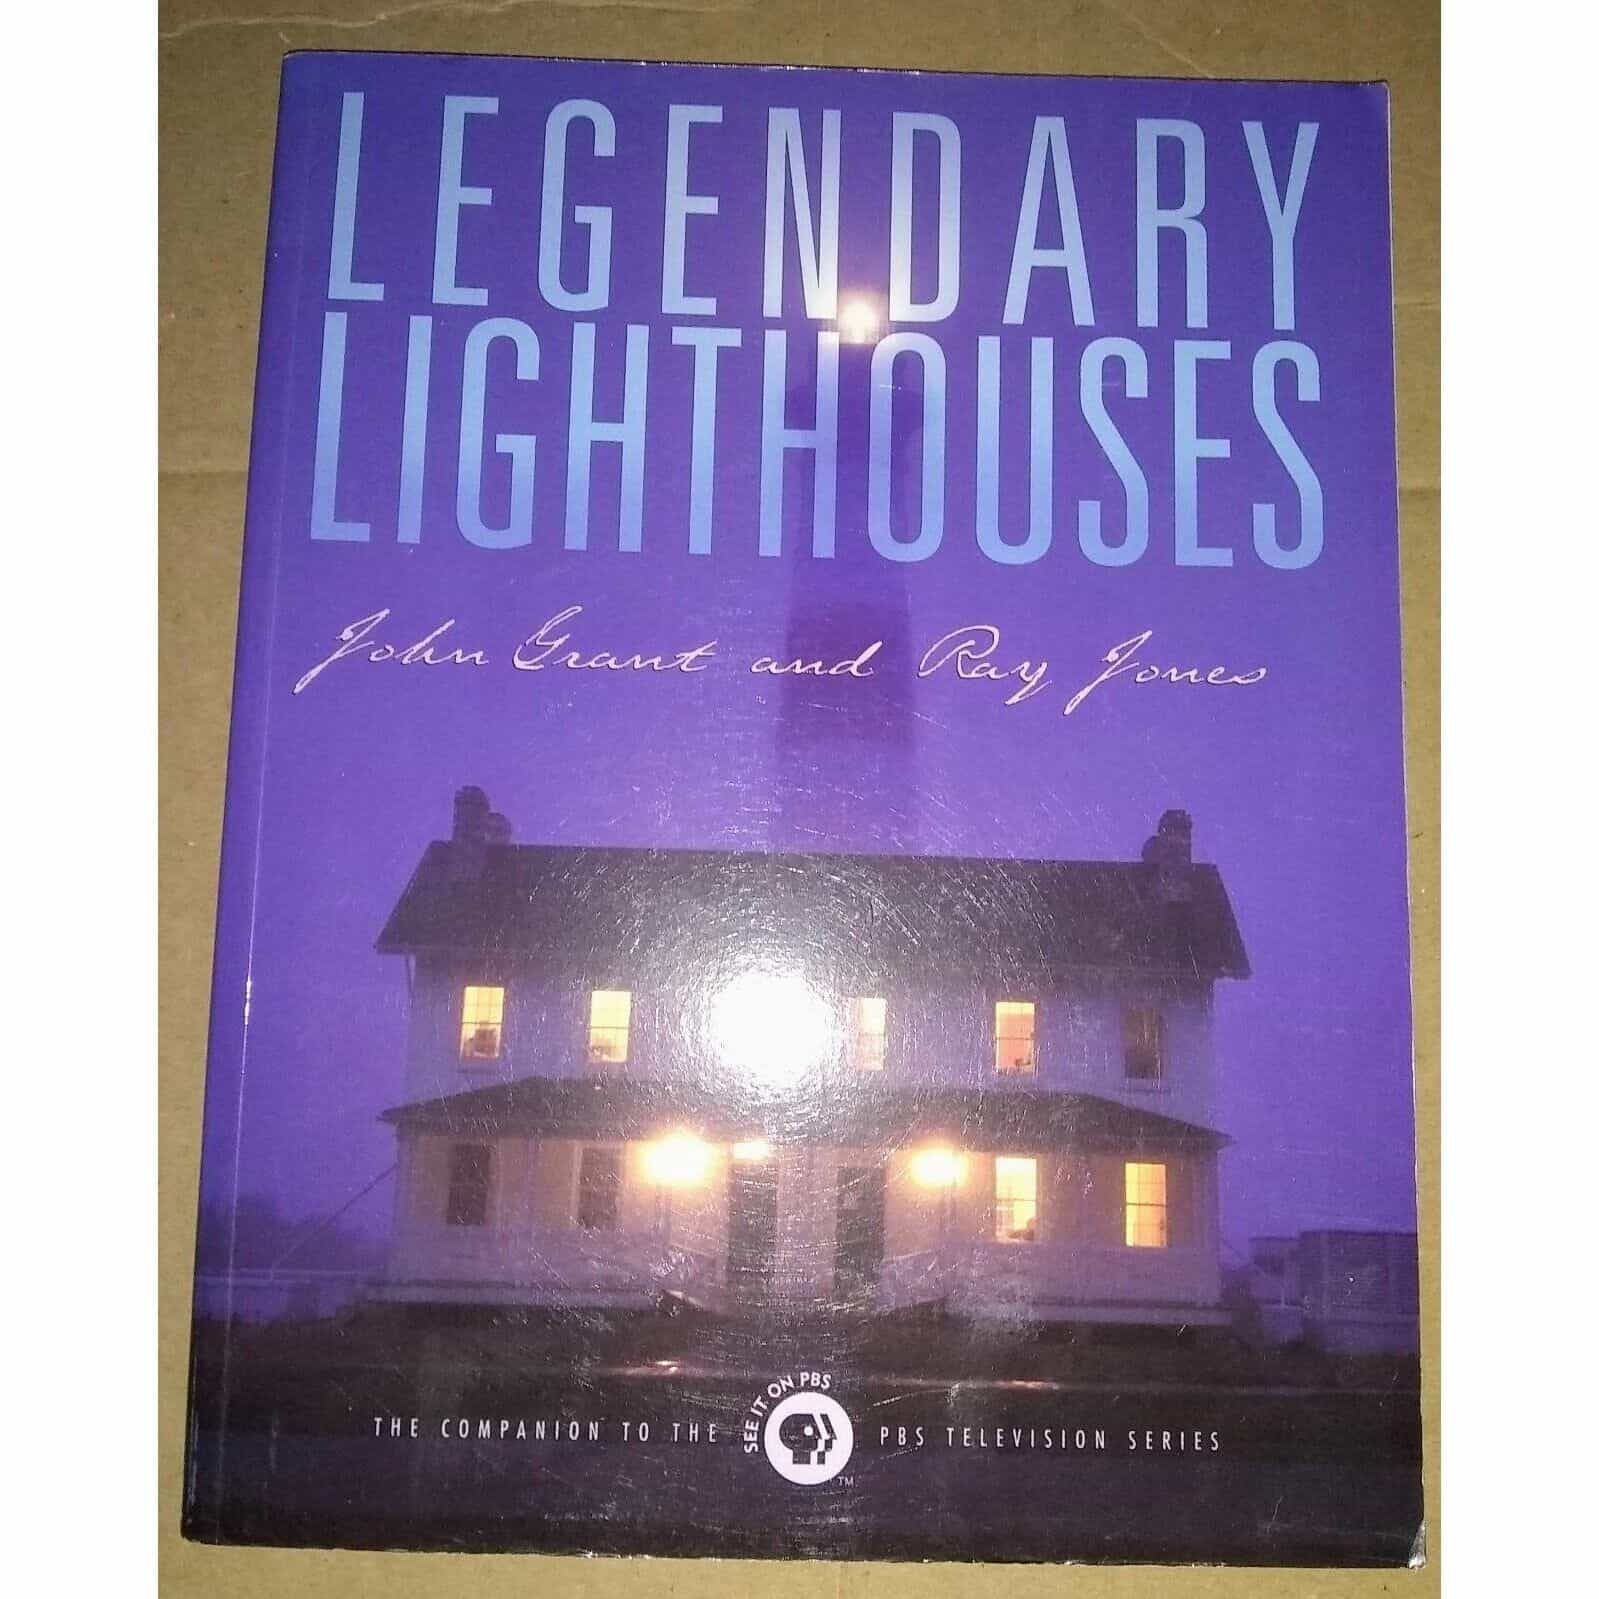 Legendary Lighthouses by John Grant